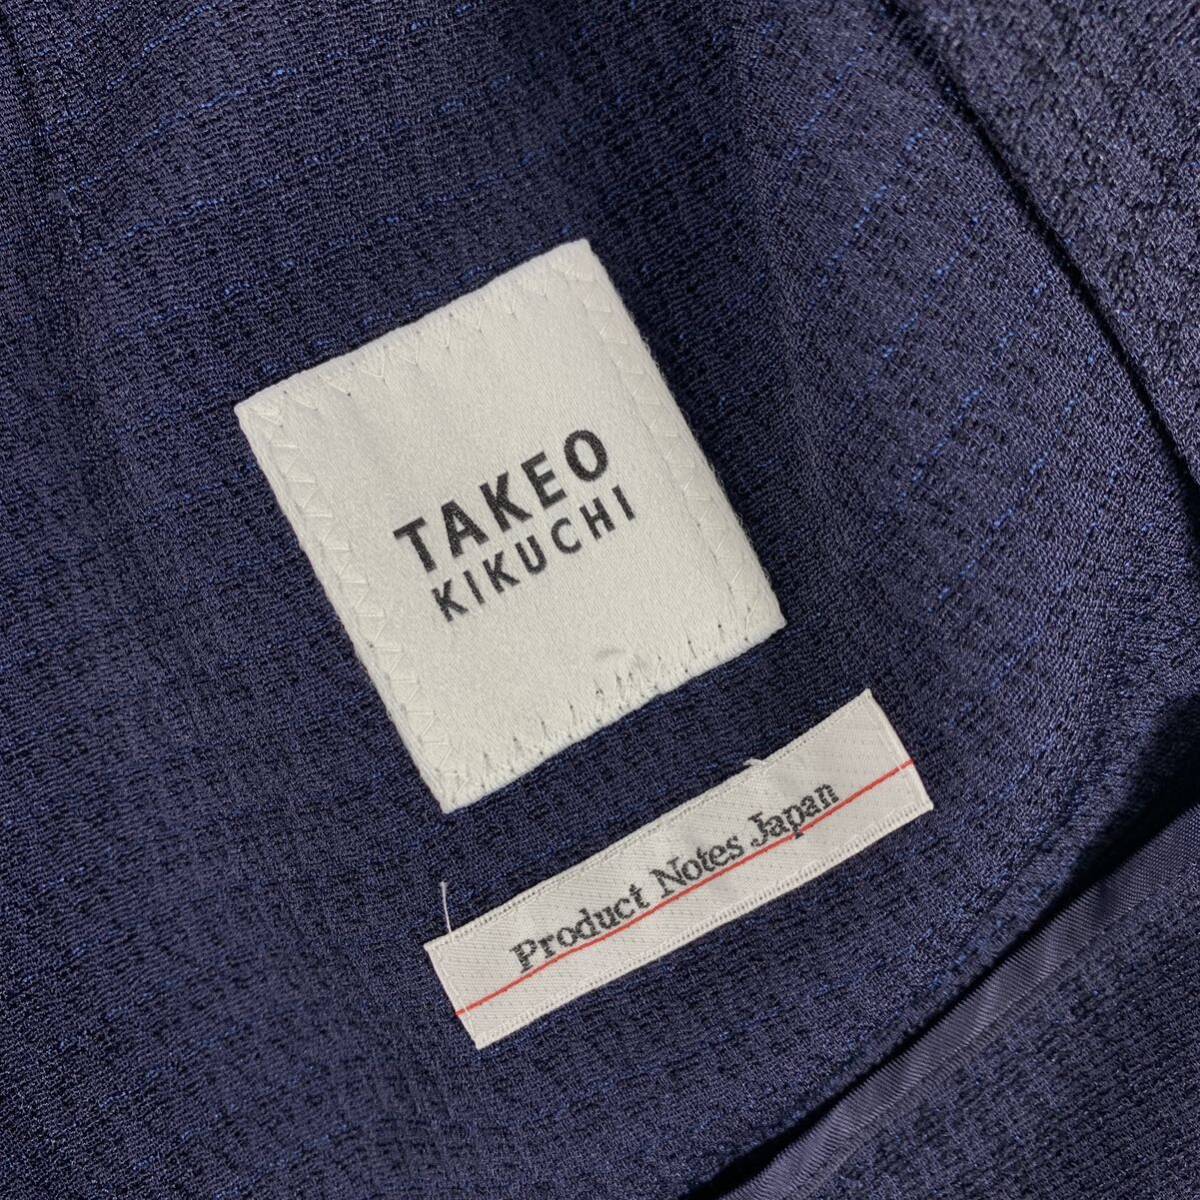  Takeo Kikuchi tailored jacket шелк темно-синий 2 YA6704